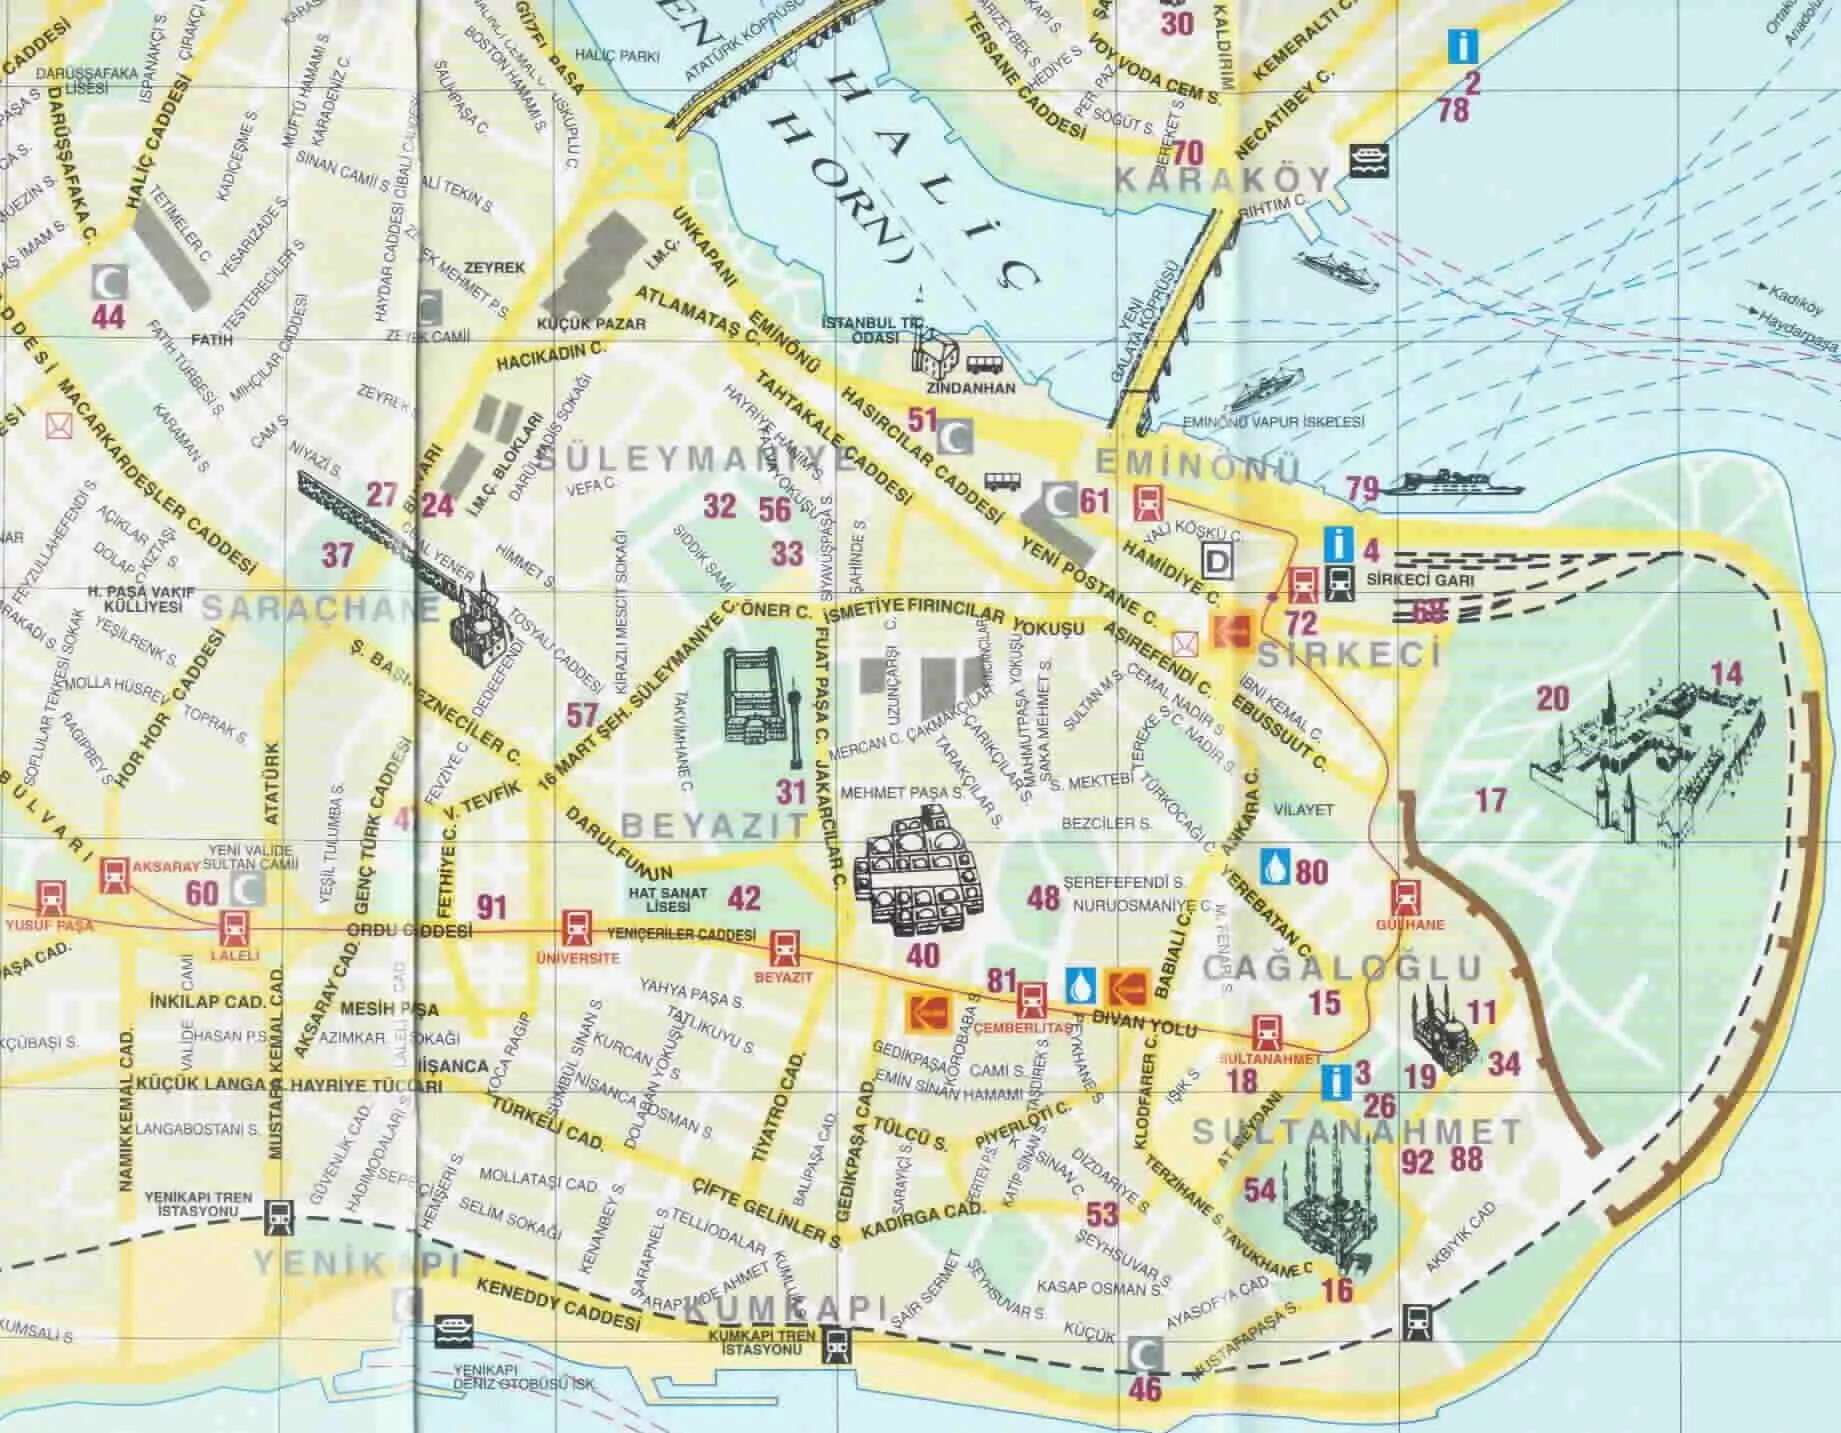 Карта Стамбула на русском языке с достопримечательностями. Султанахмет на карте Стамбула. Район Султанахмет в Стамбуле на карте. Истанбул Турция на карте.